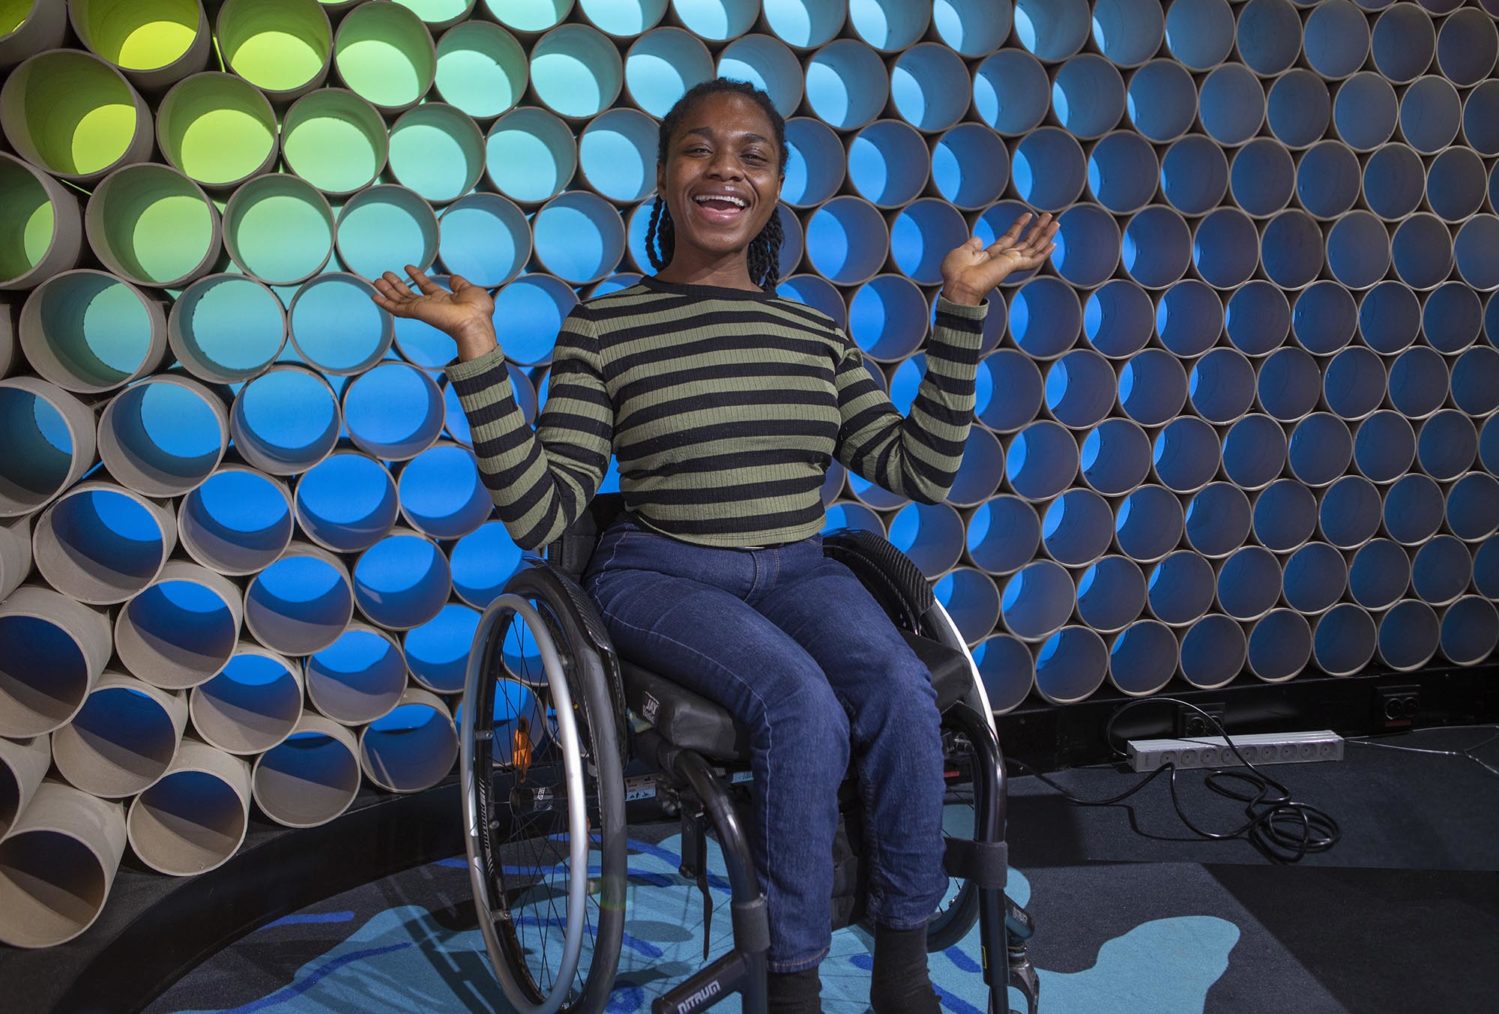 Smilende Sally i rullestol foran kullissene i et TV-studio.